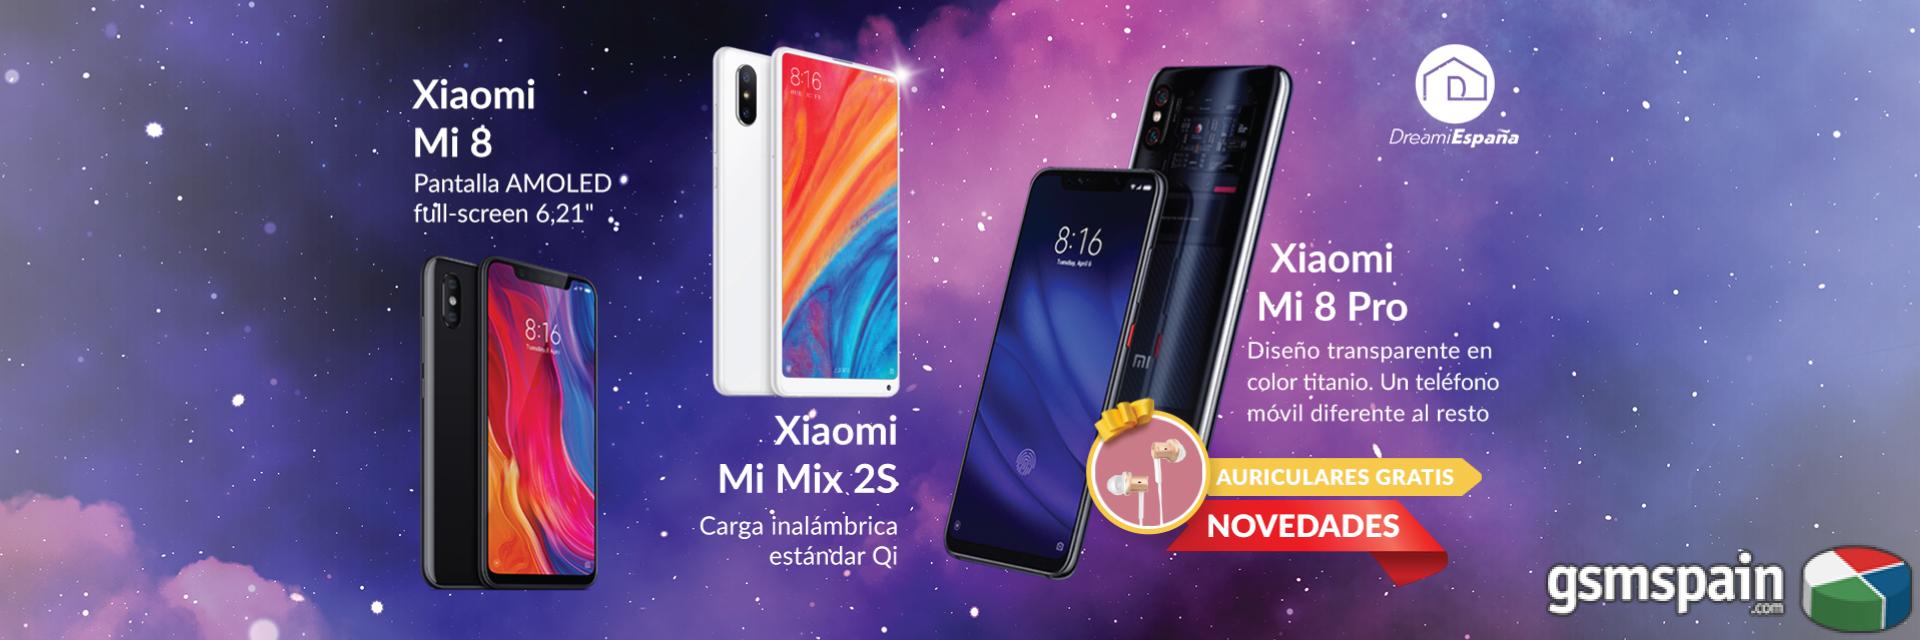 [VENDO] Xiaomi Mi 8 Pro a 509! NUEVO! Entrega gratis 3-5 dias!